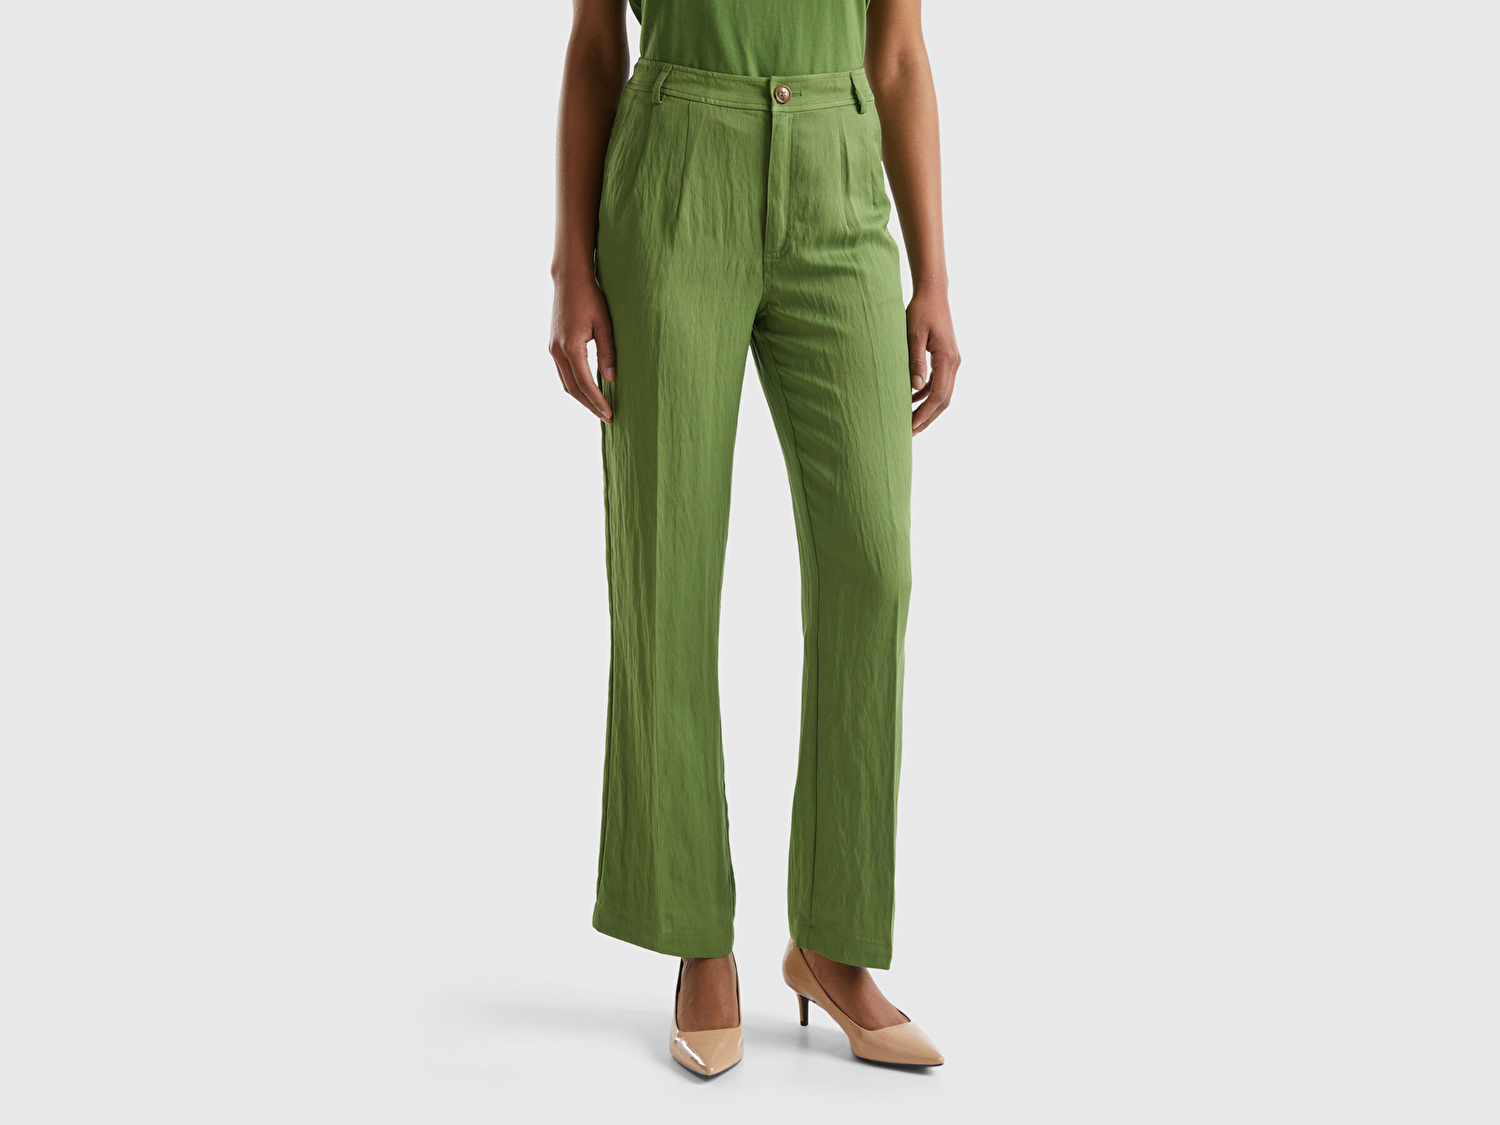 Benetton Kadın Soluk Yeşil Liyosel Karışımlı Çift Pileli Kemer Delikli Pantolon